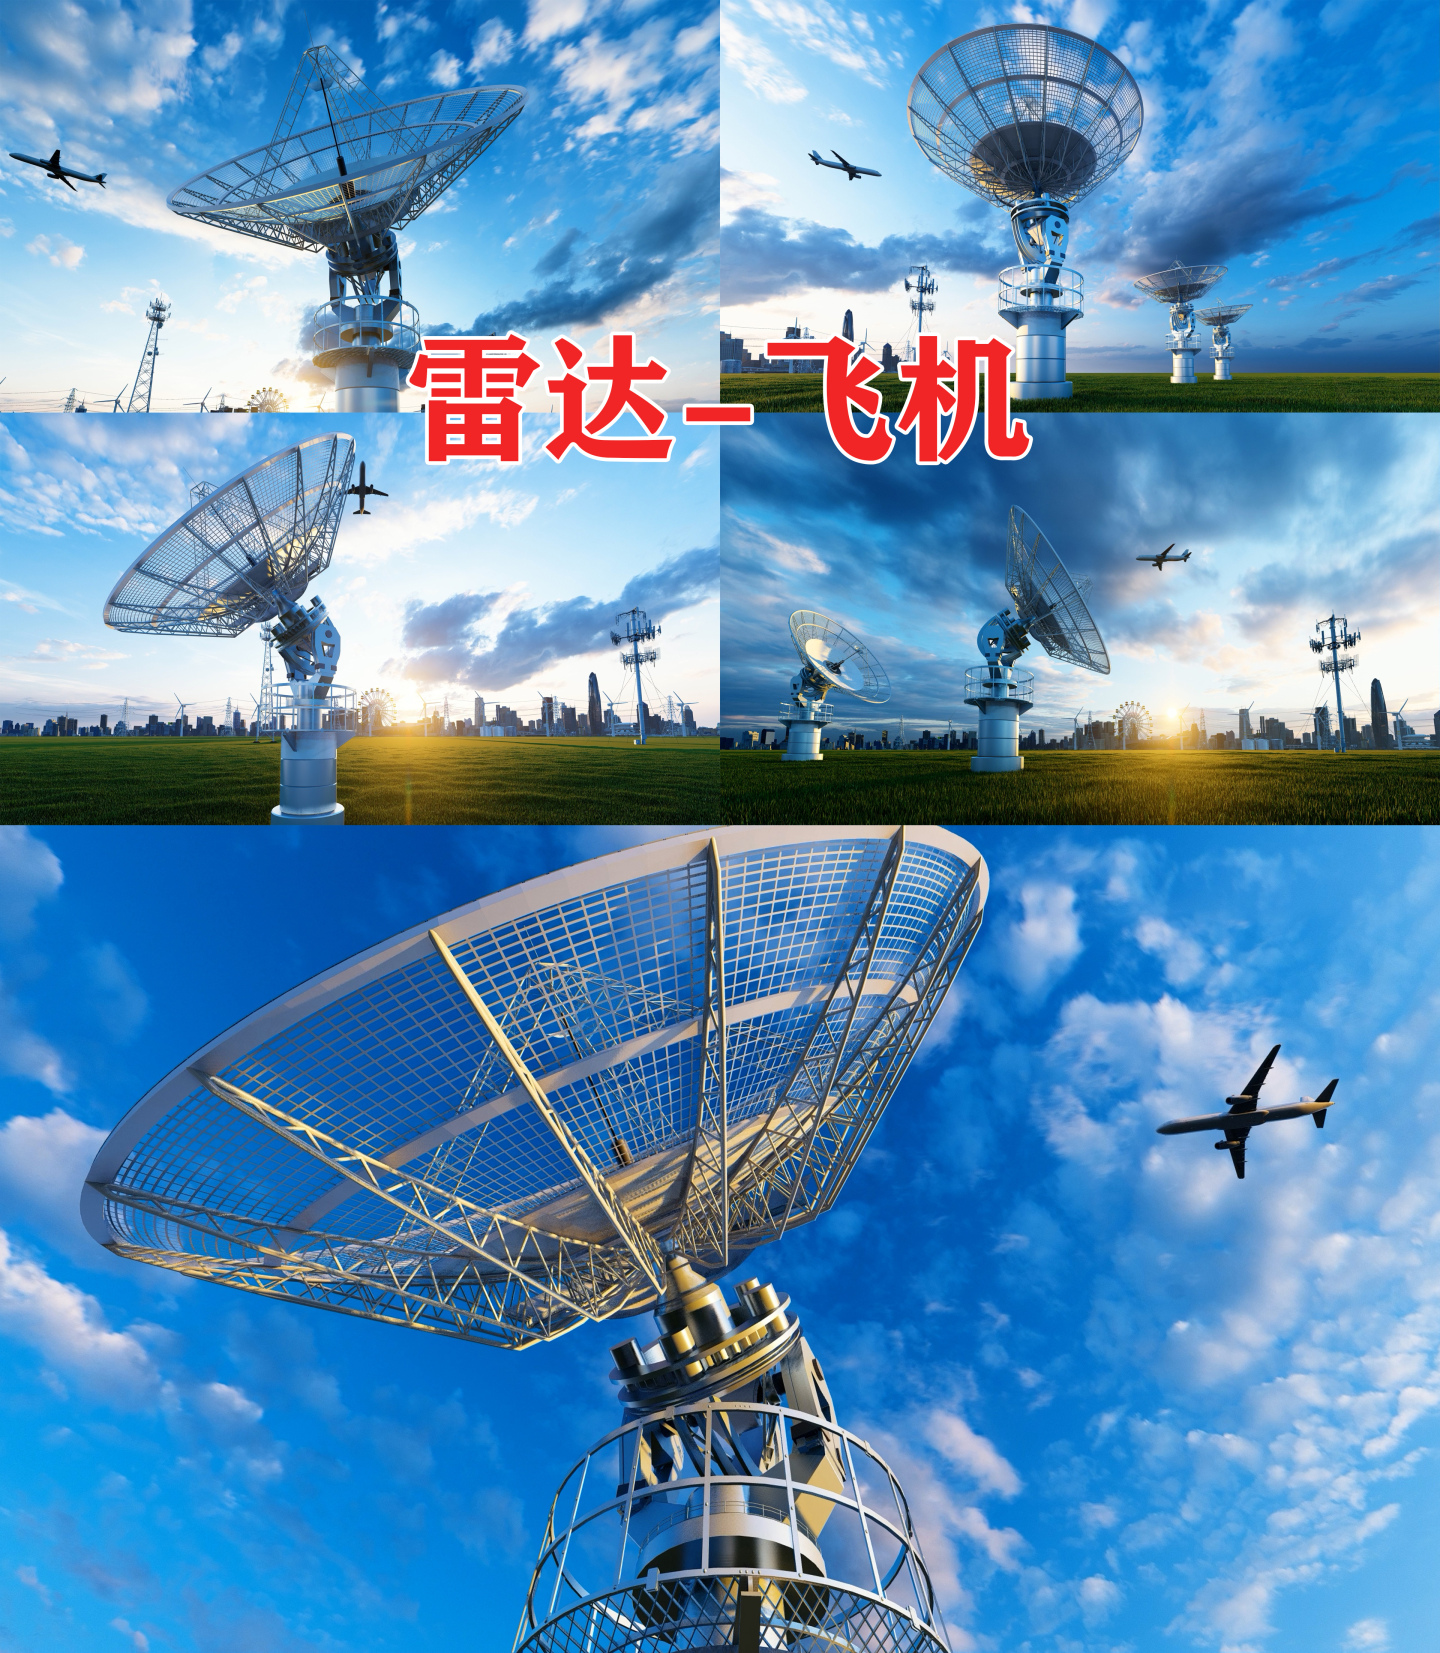 雷达 信息通讯 射电望远镜